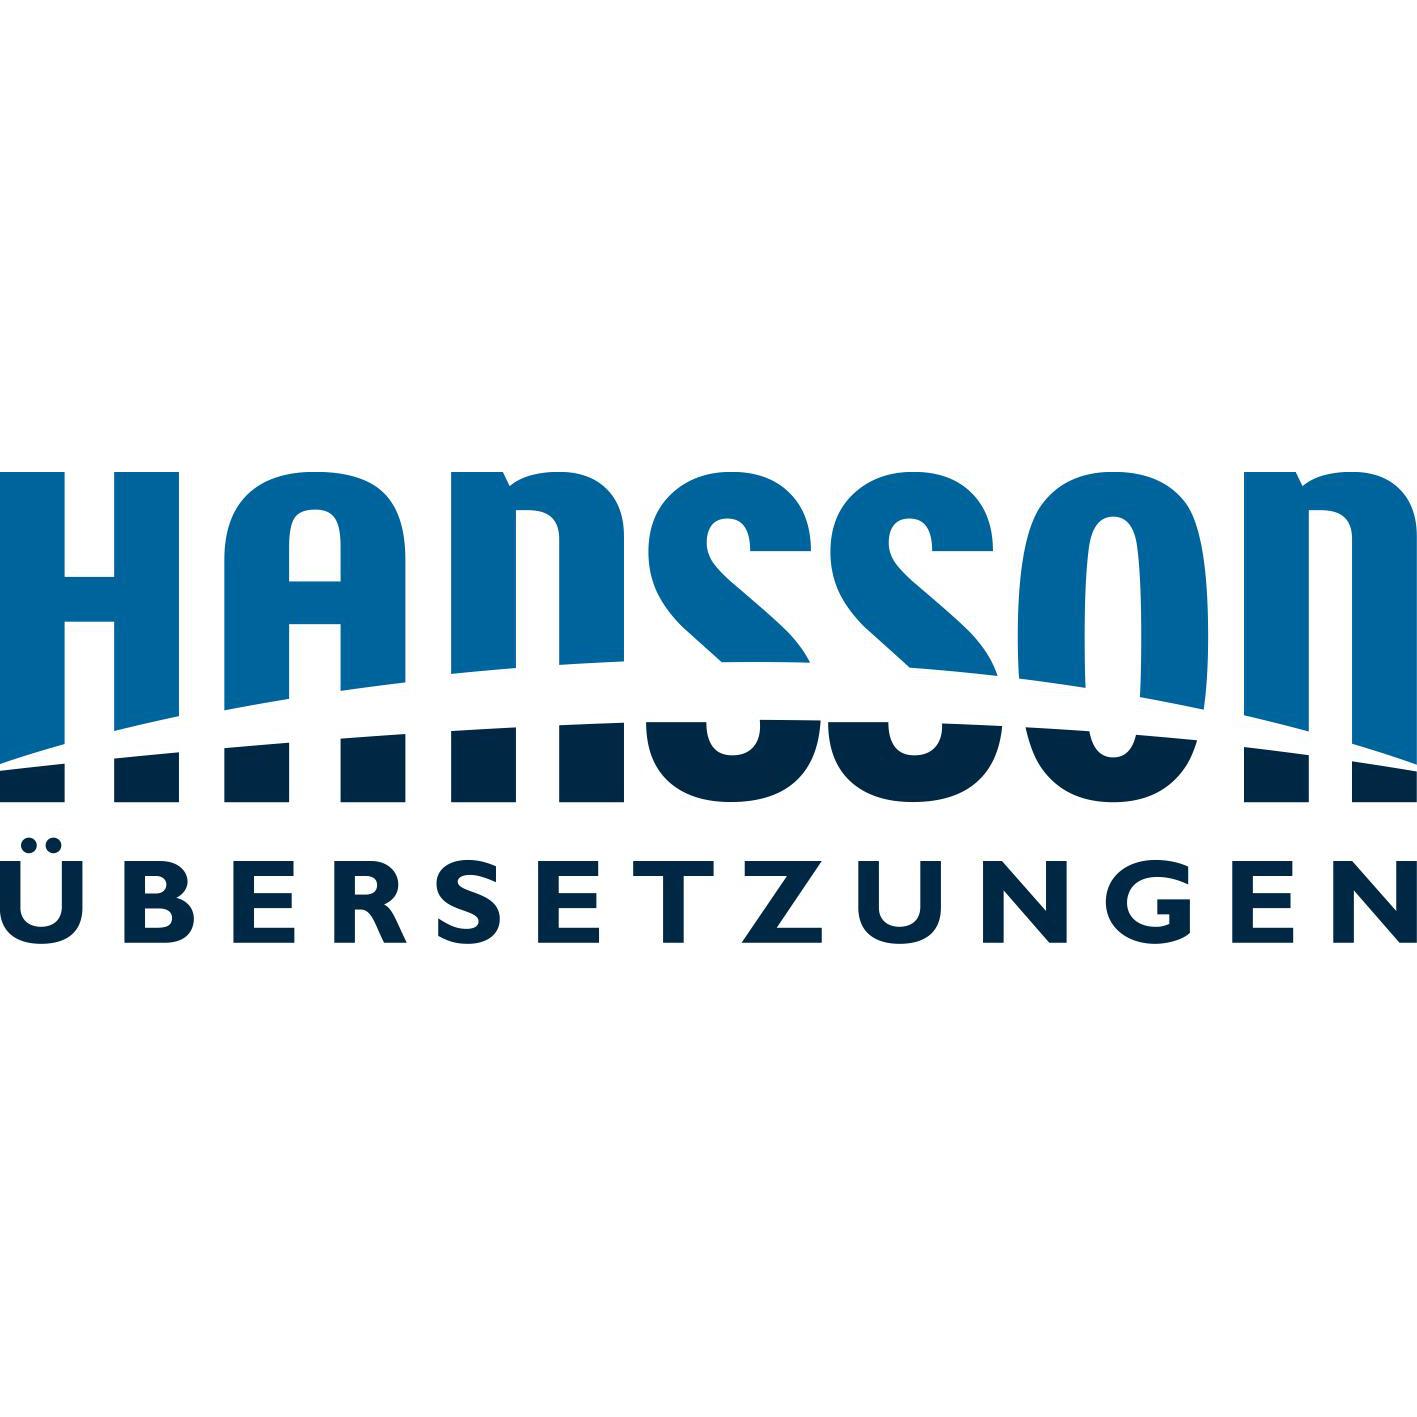 Hansson Übersetzungen GmbH in Großröhrsdorf in der Oberlausitz - Logo